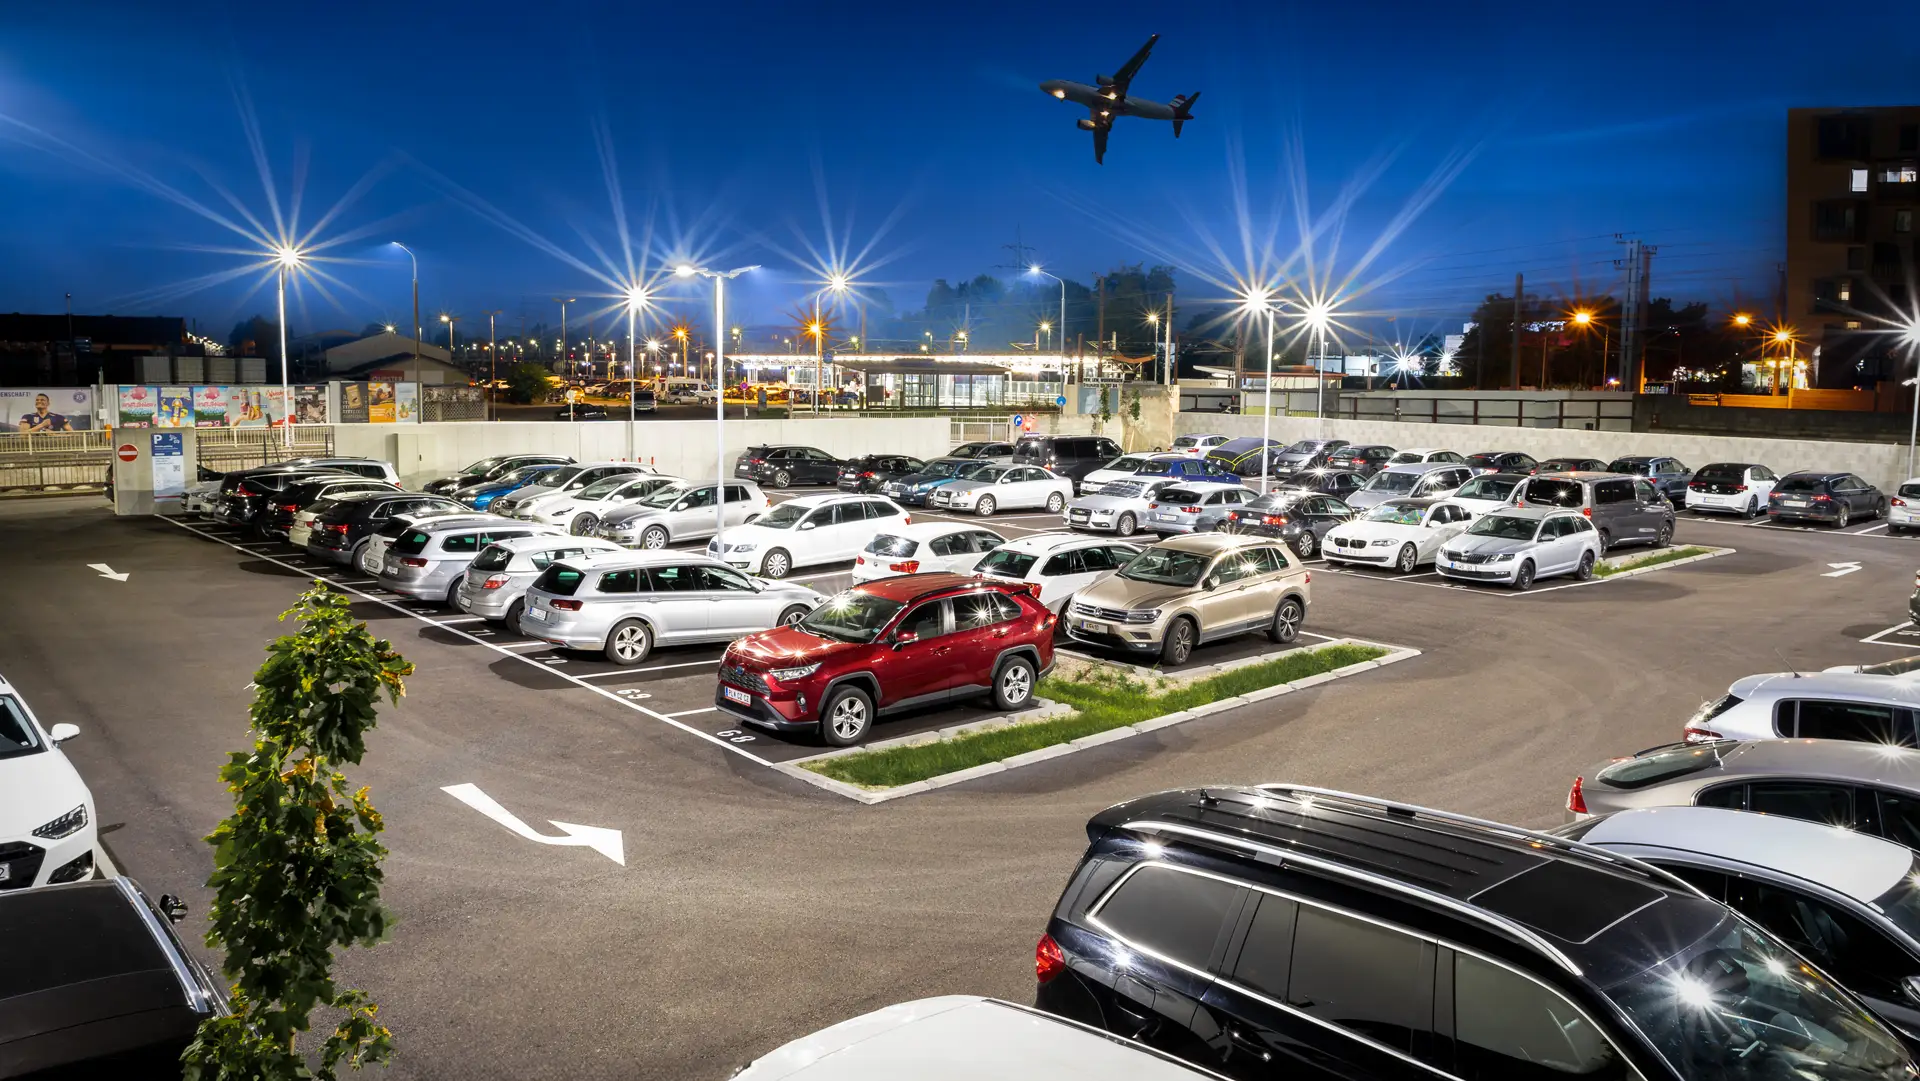 Dunaj letališče parking - Avtomobili, parkirani na parkirišču letališča Dunaj